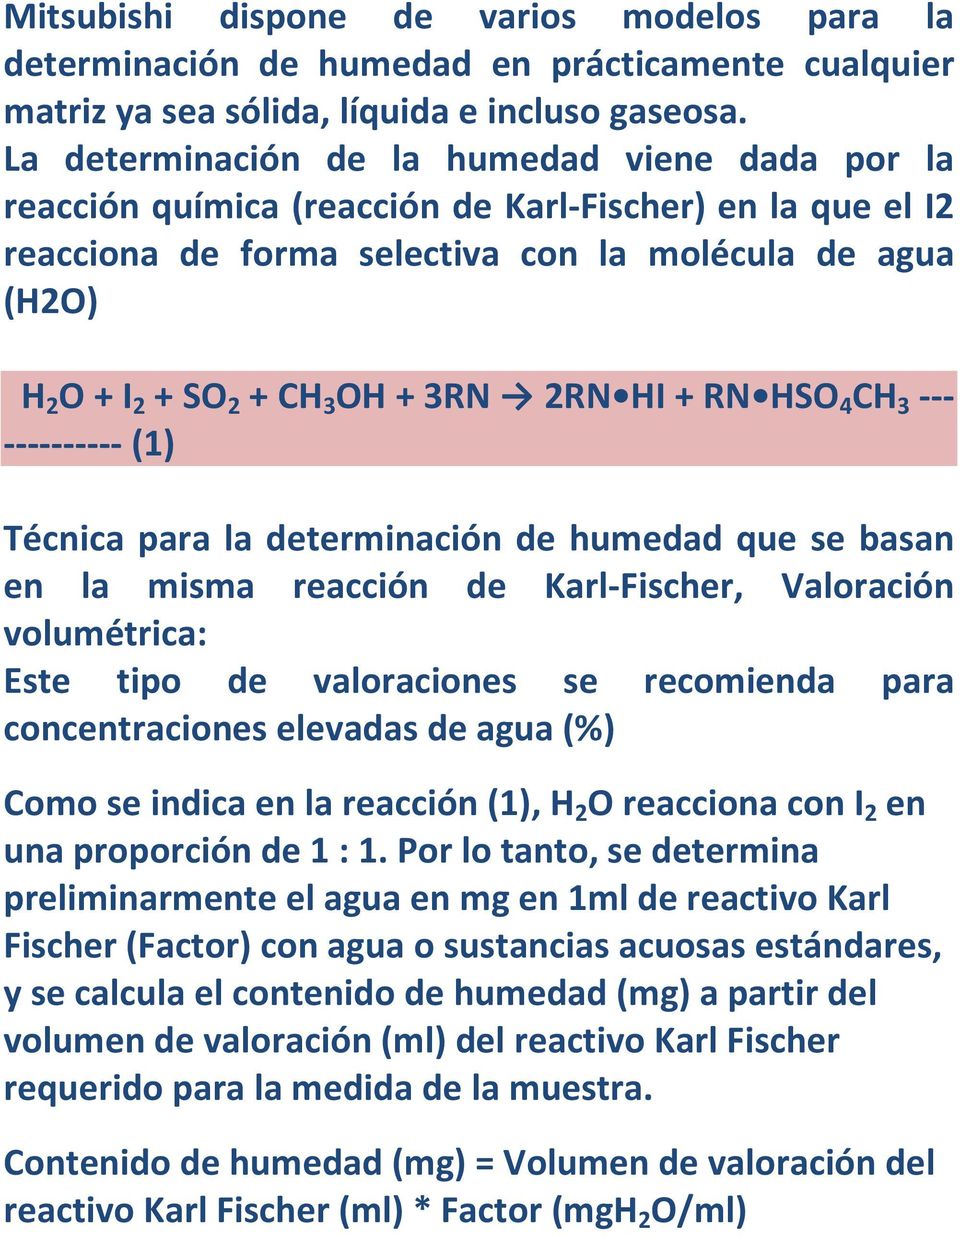 3RN 2RN HI + RN HSO 4 CH 3 --- ---------- (1) Técnica para la determinación de humedad que se basan en la misma reacción de Karl-Fischer, Valoración volumétrica: Este tipo de valoraciones se